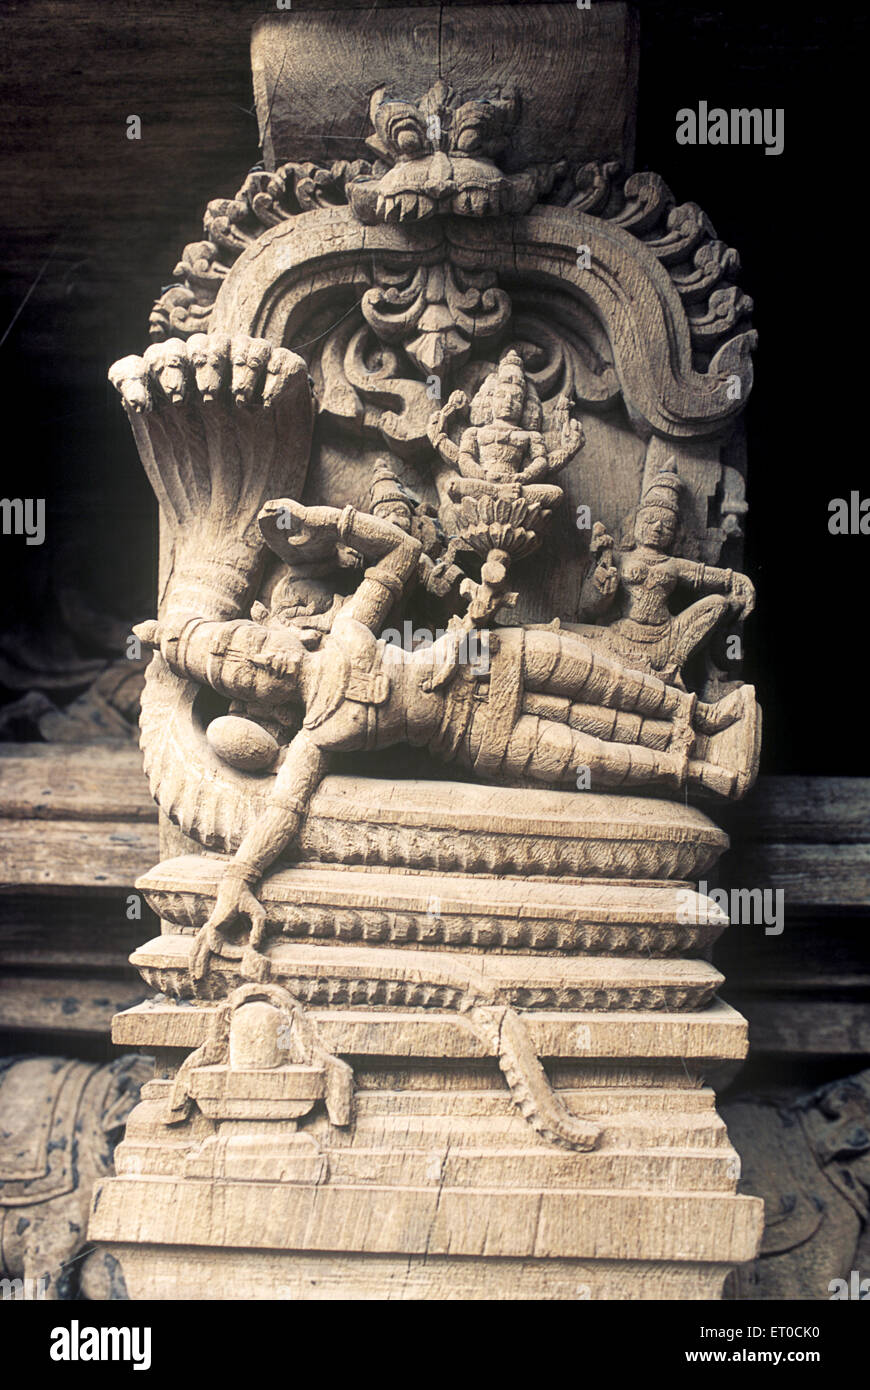 Ananthapadmanabha vishnu schläft auf Schlange hölzerne Schnitzerei Statue im alten Tempelwagen bei Madurai; Tamil Nadu; Indien; asien Stockfoto